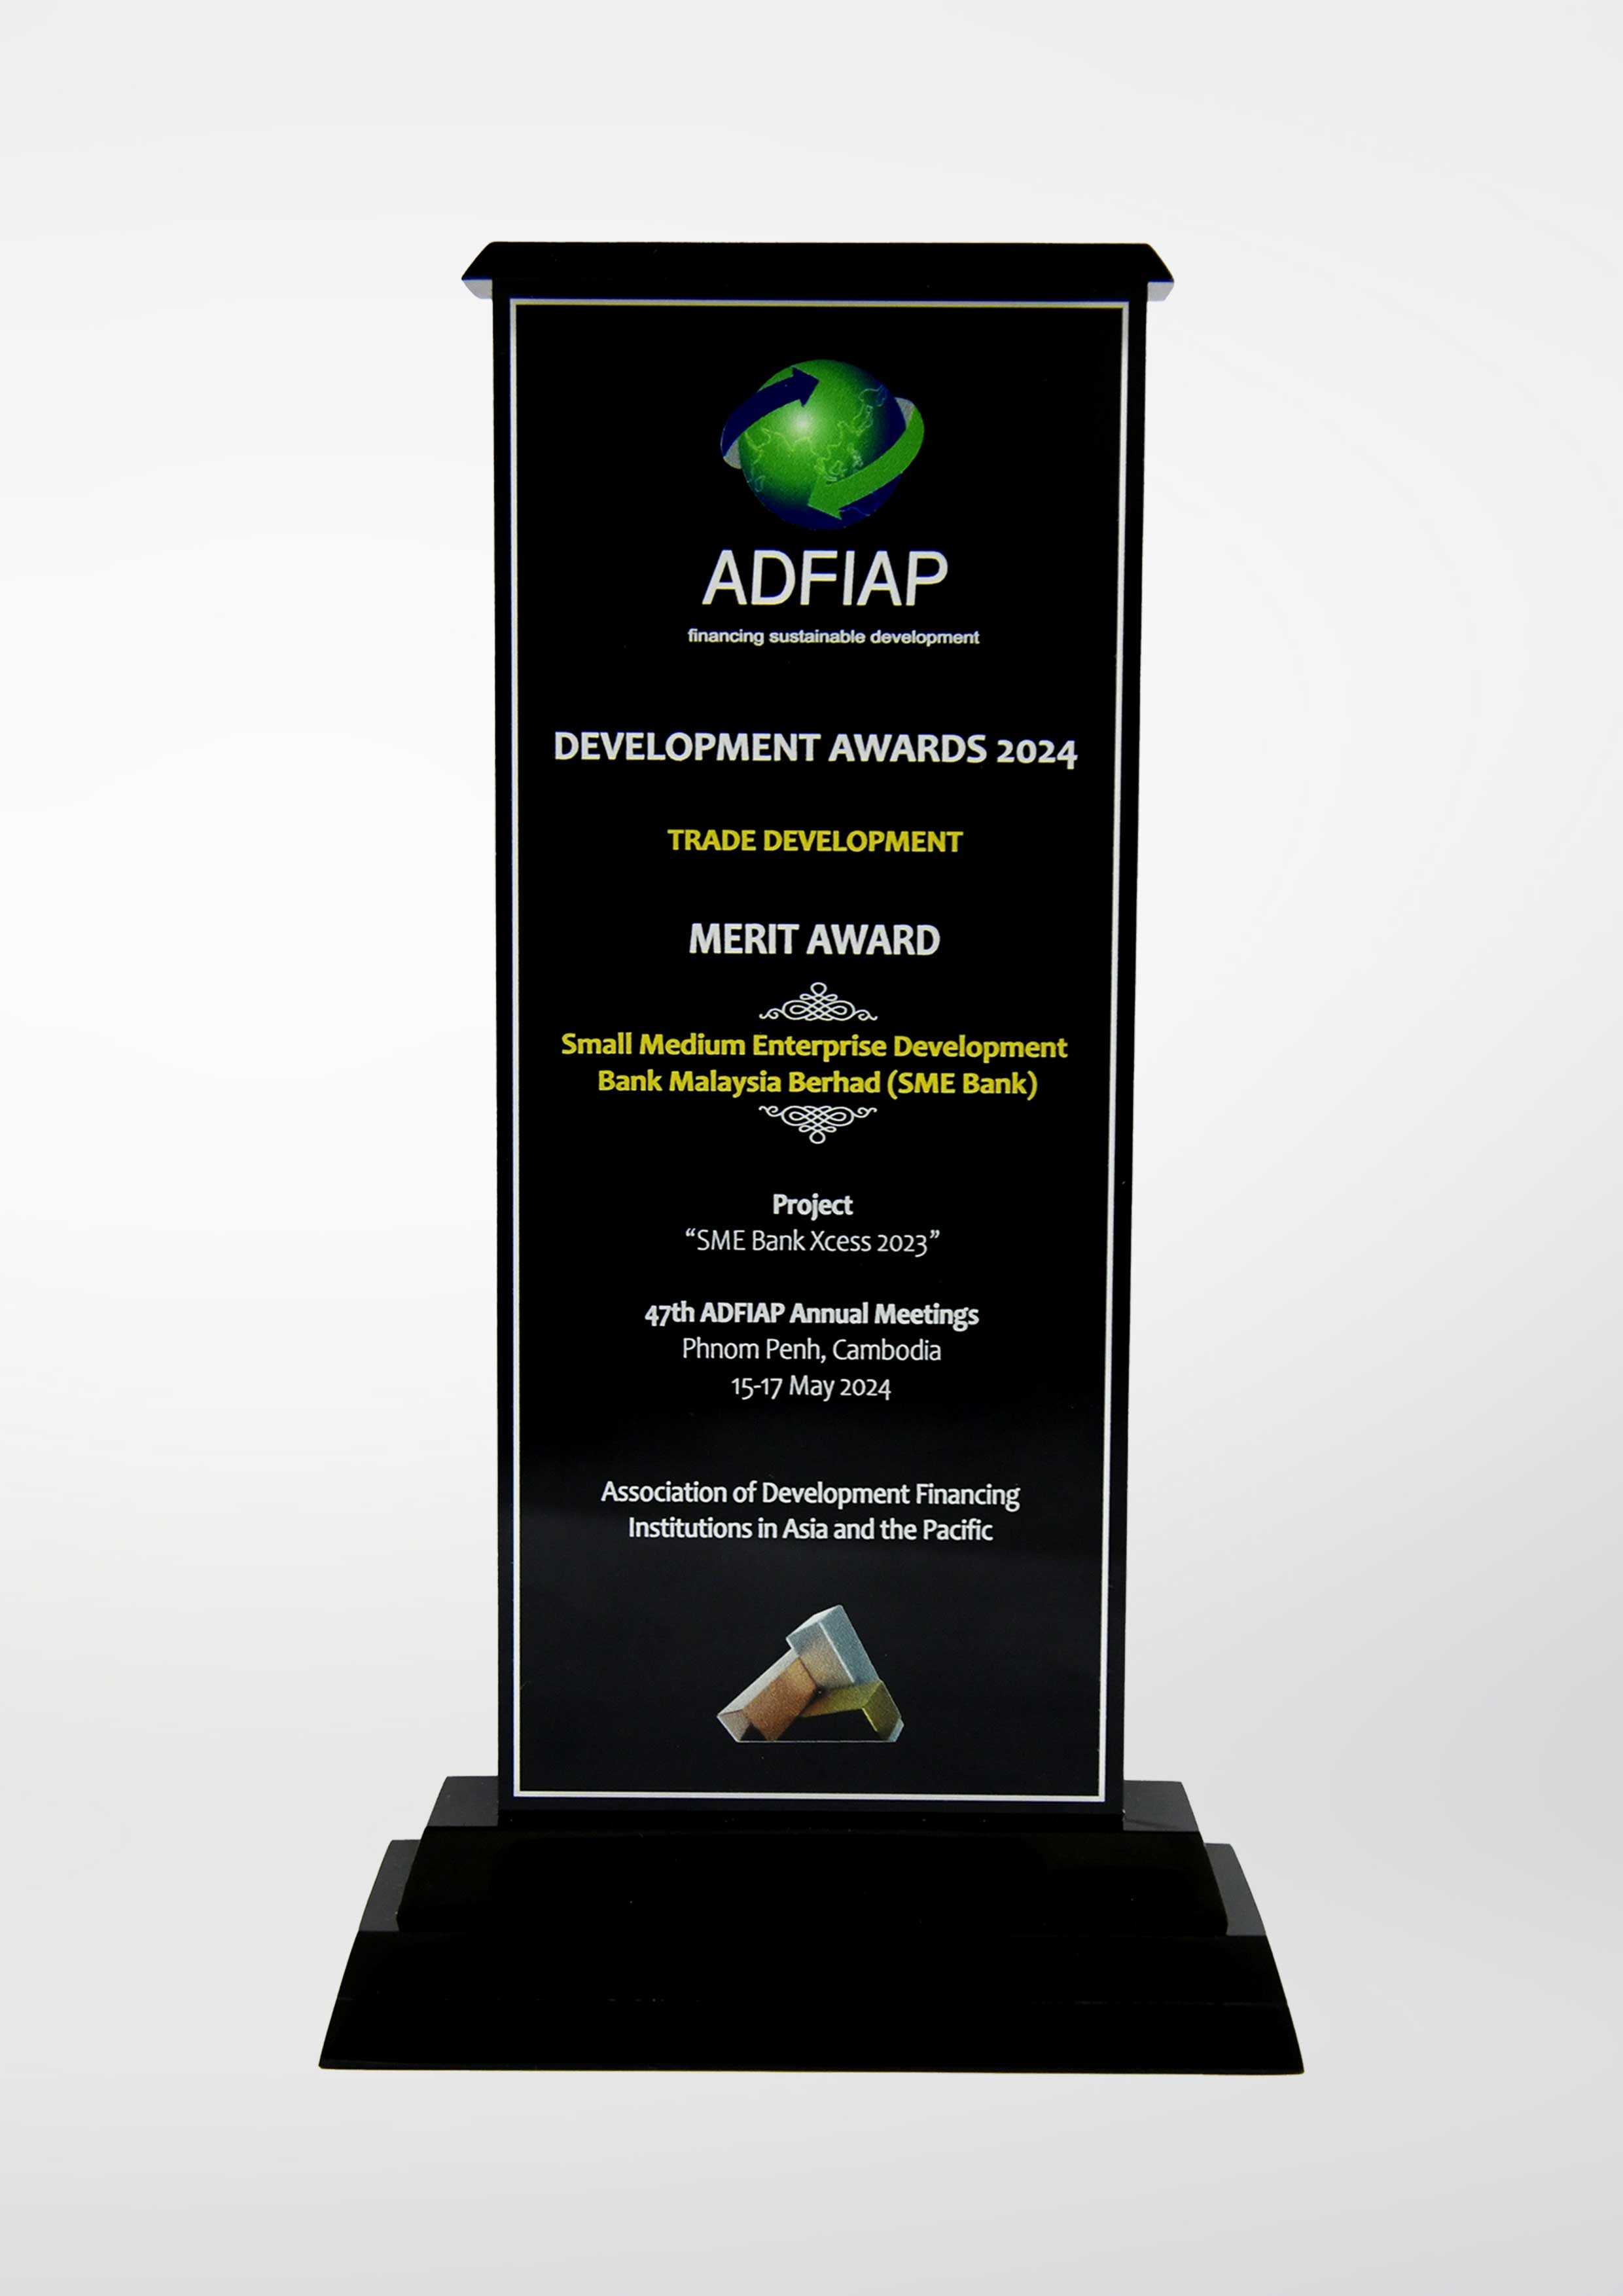 ADFIAP Awards 2024 - Trade Development Category